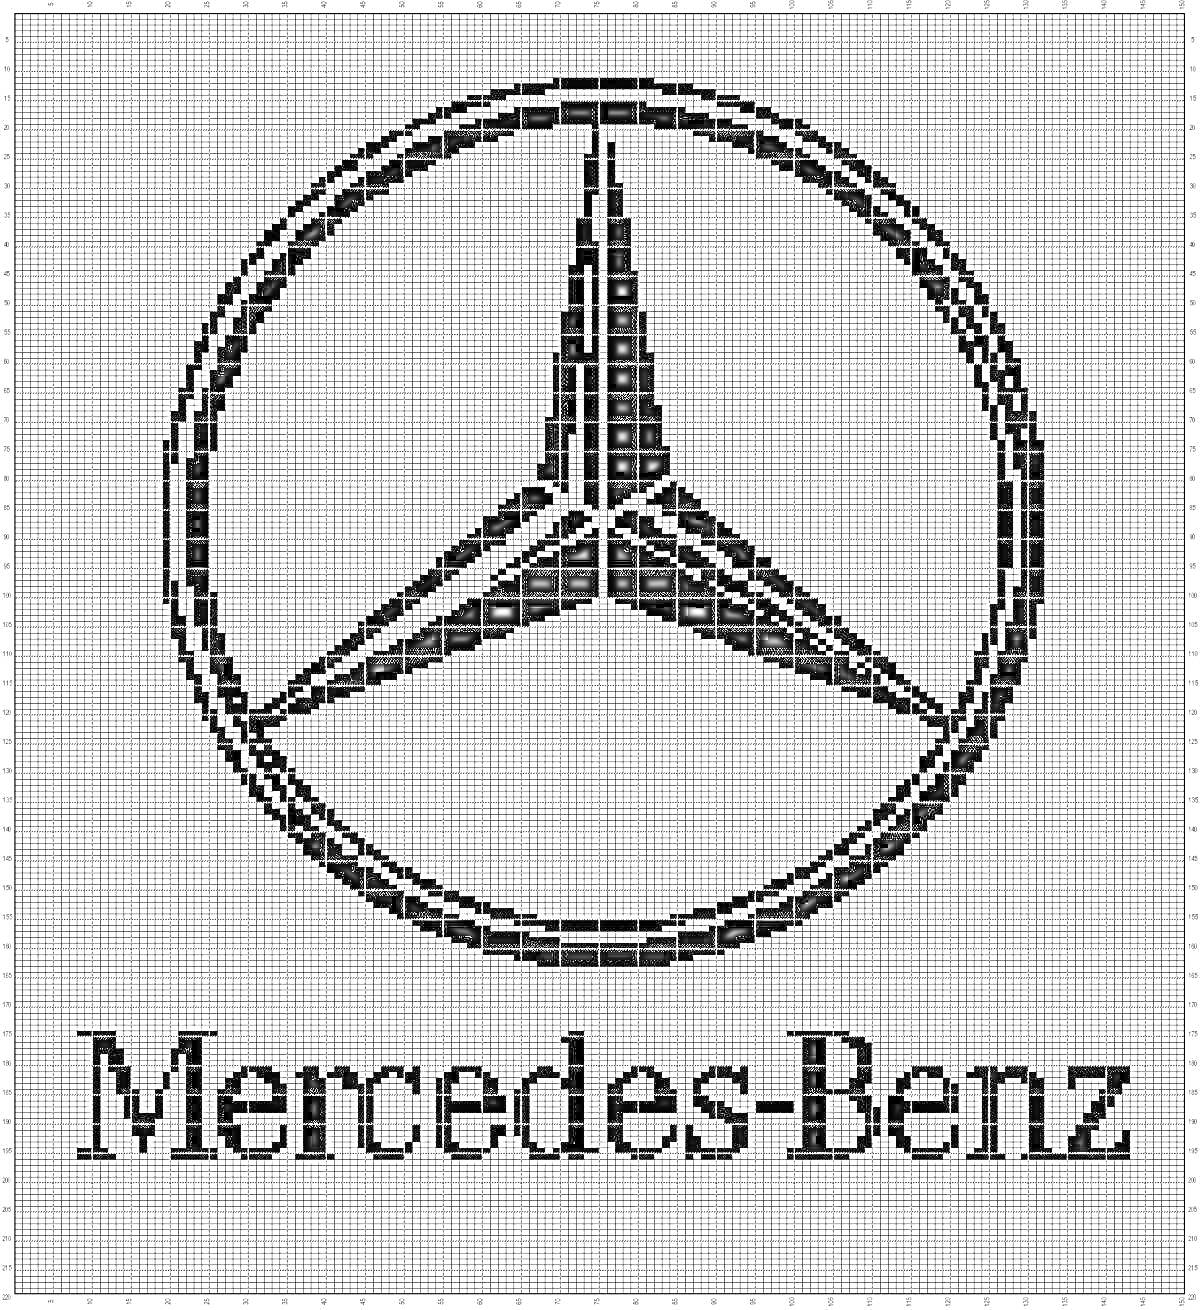 Логотип Mercedes-Benz, значок с тремя лучами внутри круг, текст 